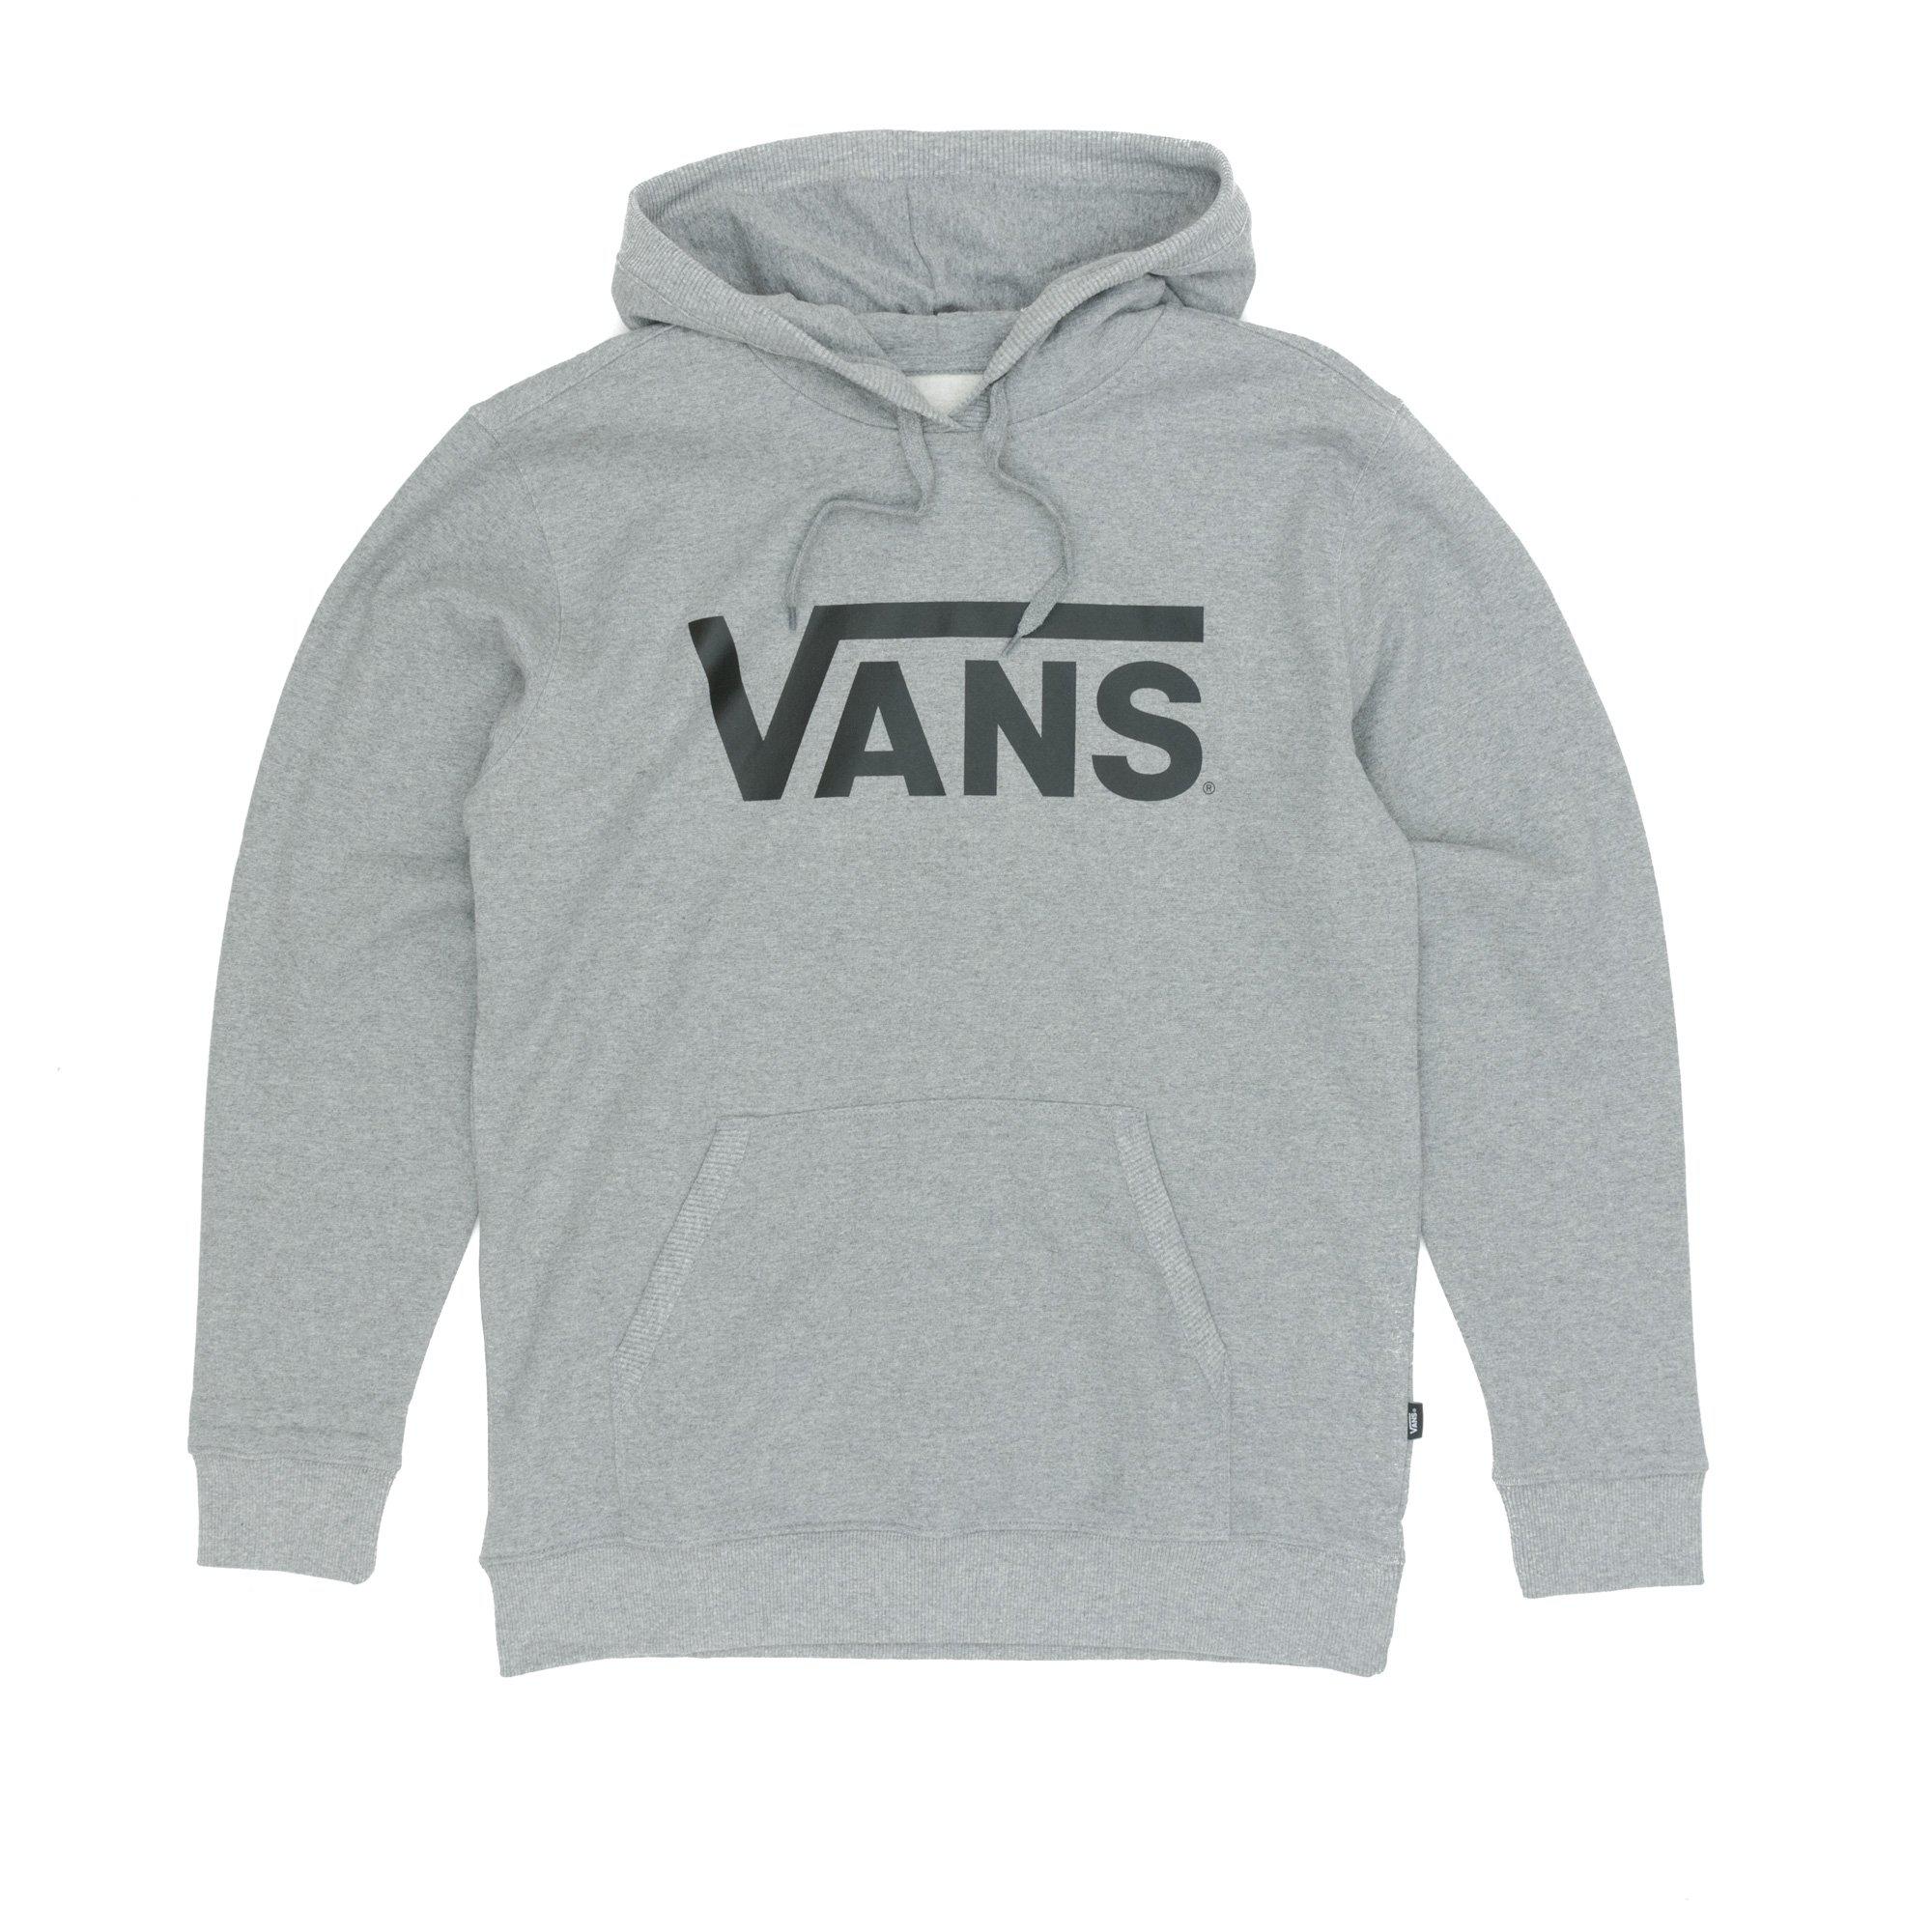 Vans Grey Sweater Online, SAVE 43% - raptorunderlayment.com